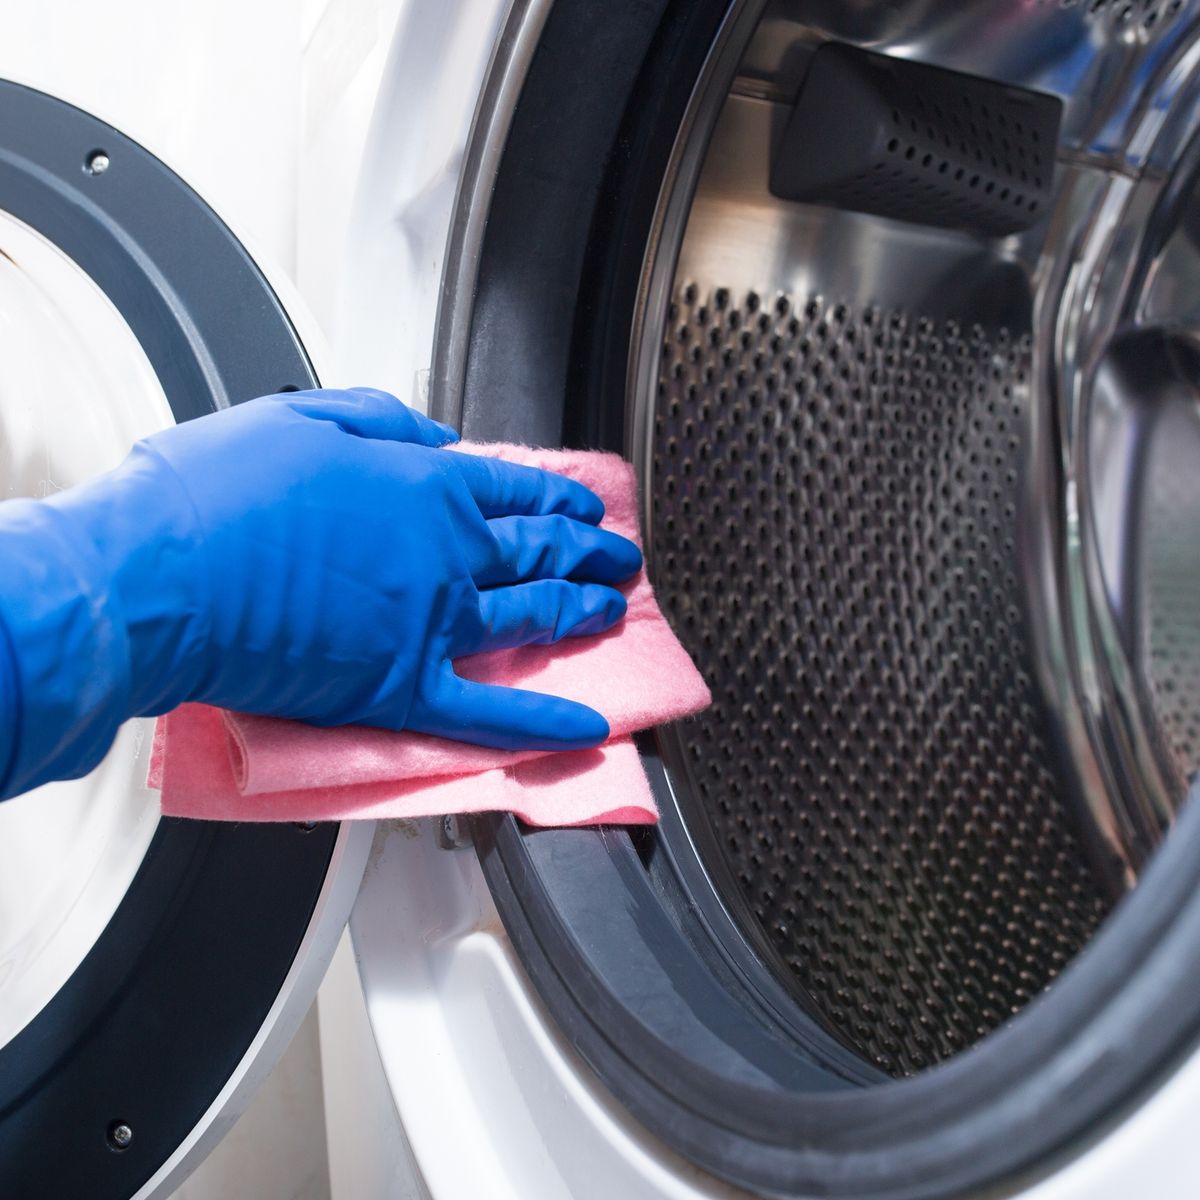 8 consejos para lavar la ropa interior - Innovación para tu vida.